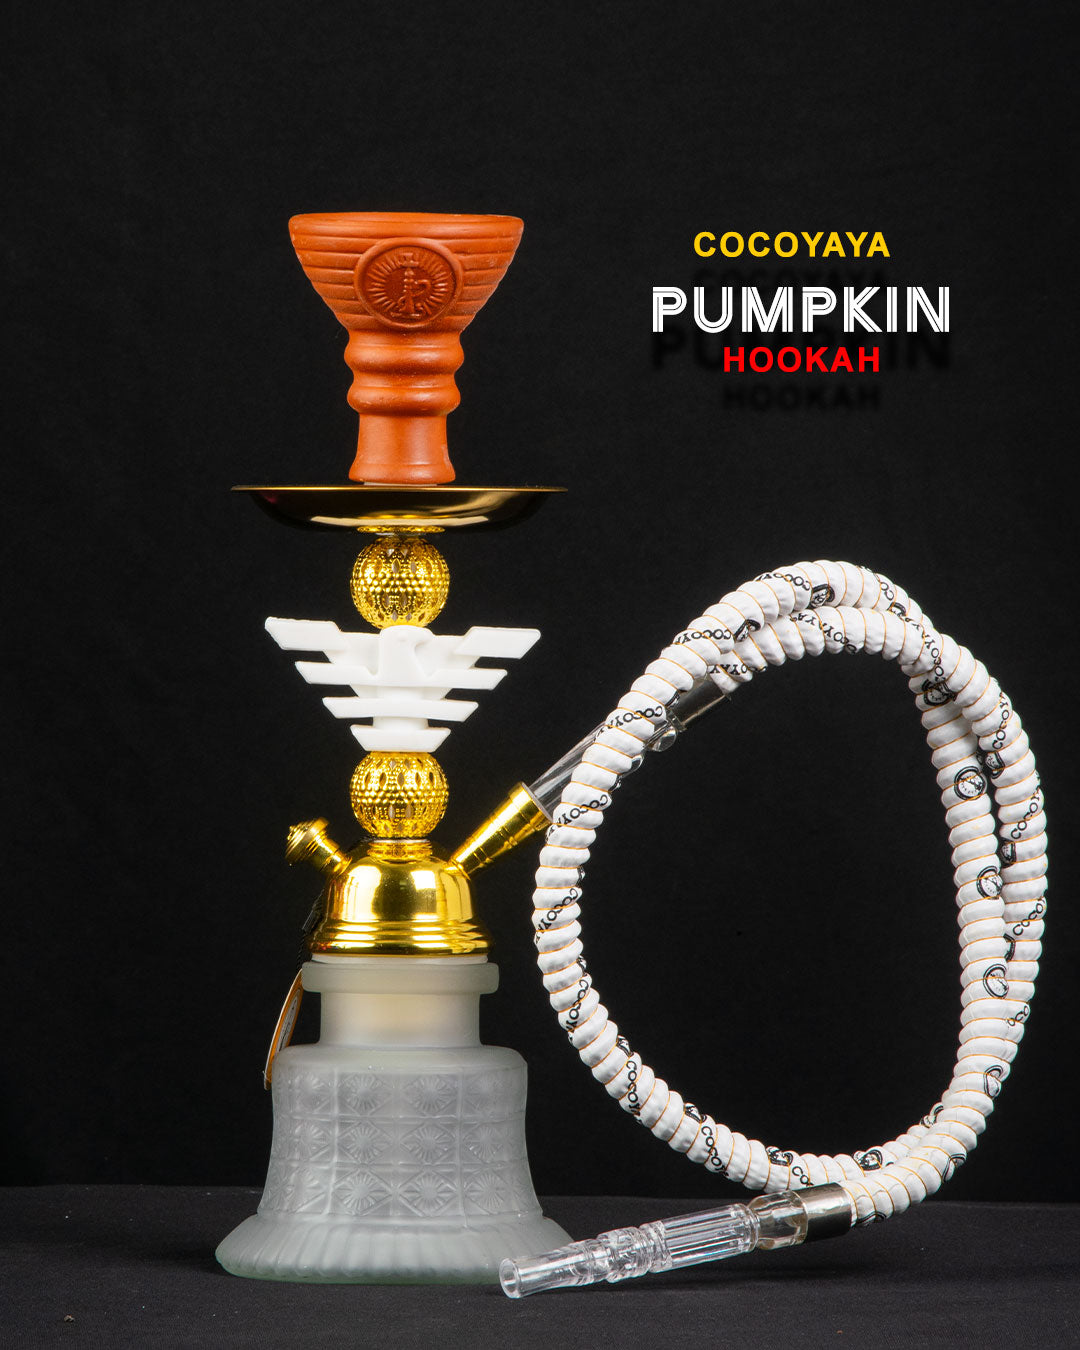 COCOYAYA Pumpkin 1205 Hookah - White